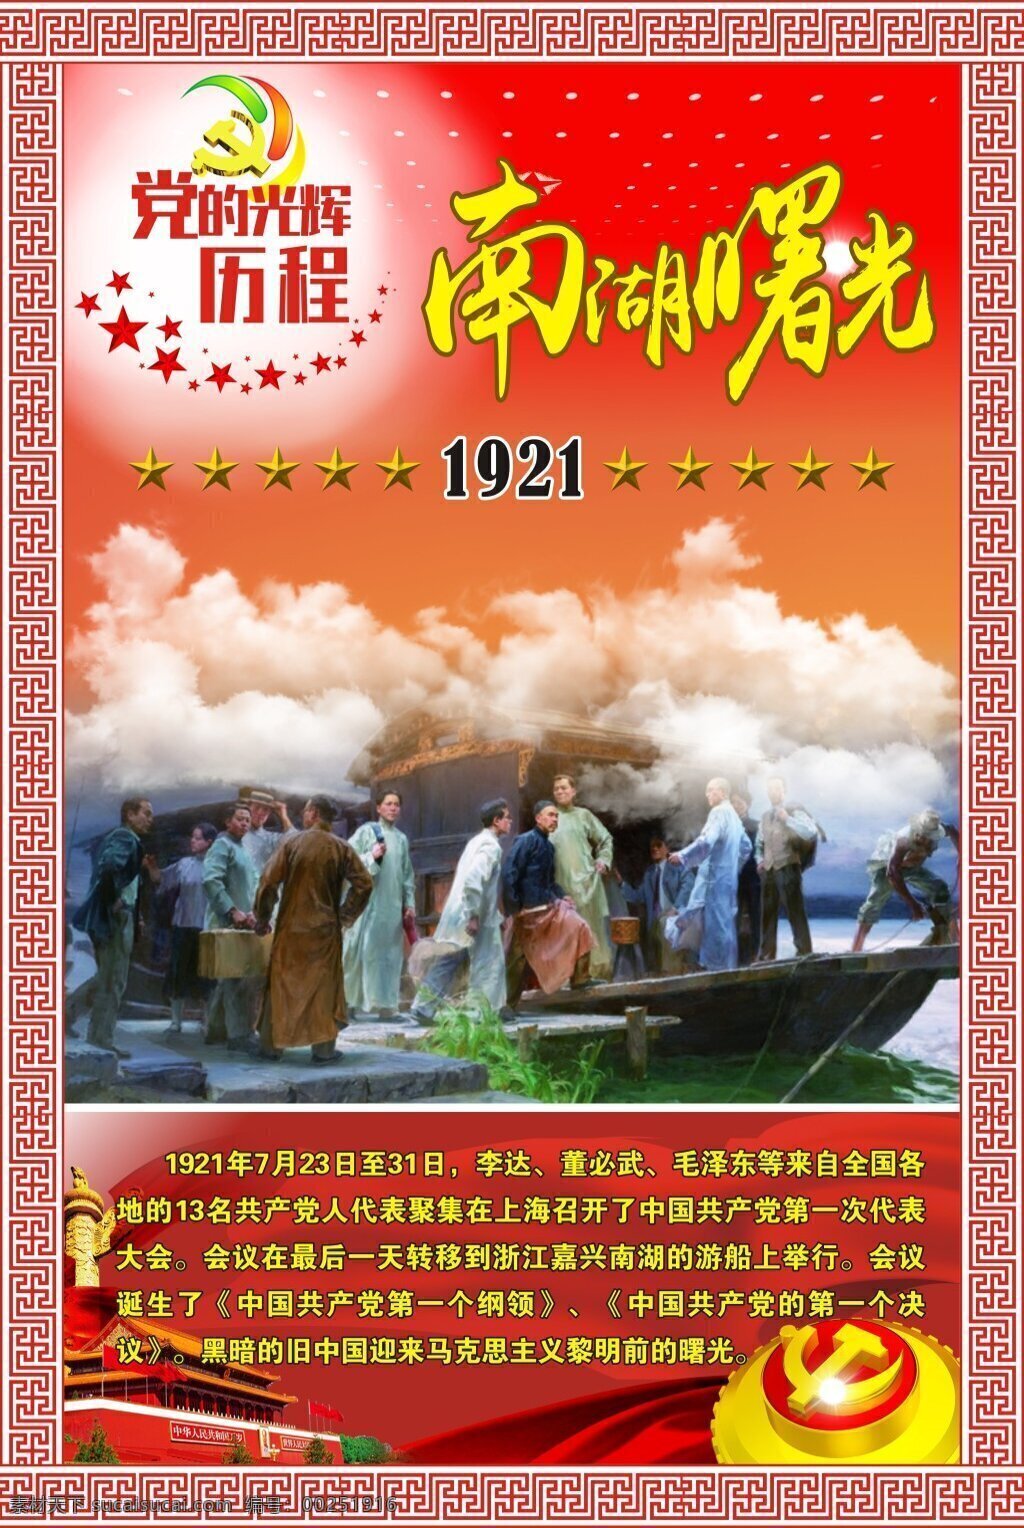 南湖 曙光 党建 展板 大气 党建展板 海报 红色 历程 云彩 照片